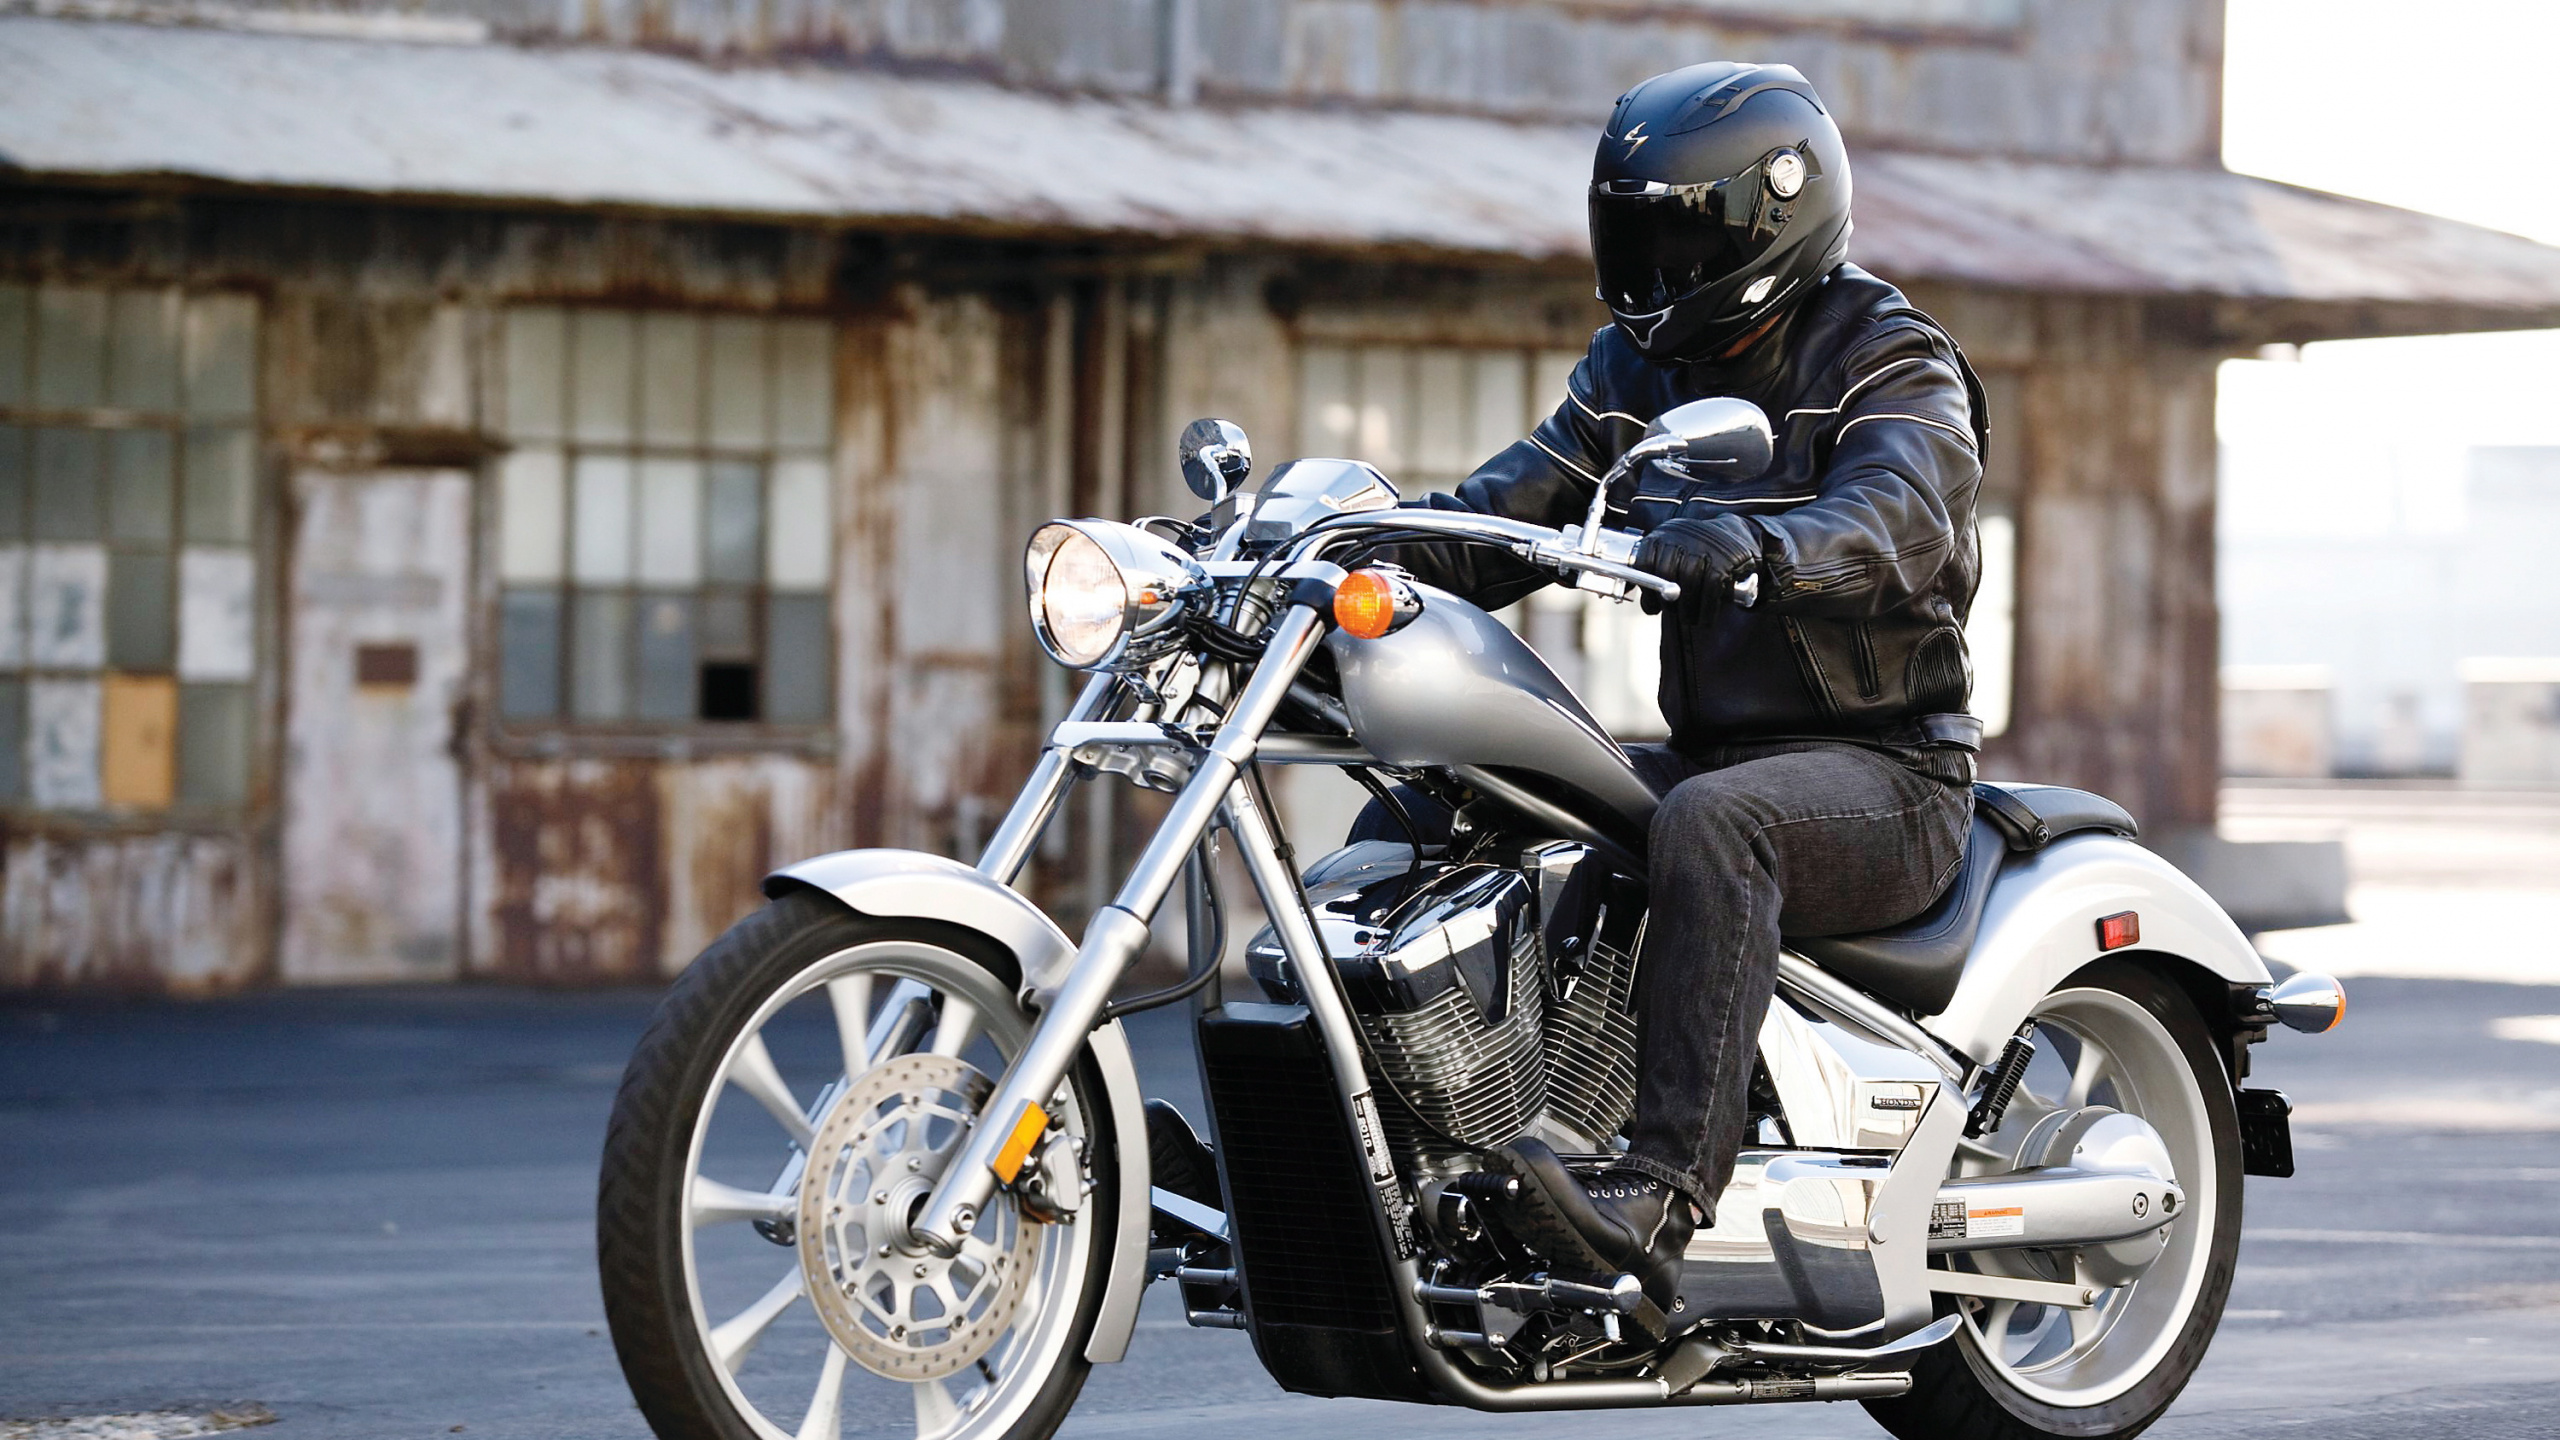 Motocicleta Negra y Plateada Estacionada en la Carretera de Hormigón Gris Durante el Día. Wallpaper in 2560x1440 Resolution